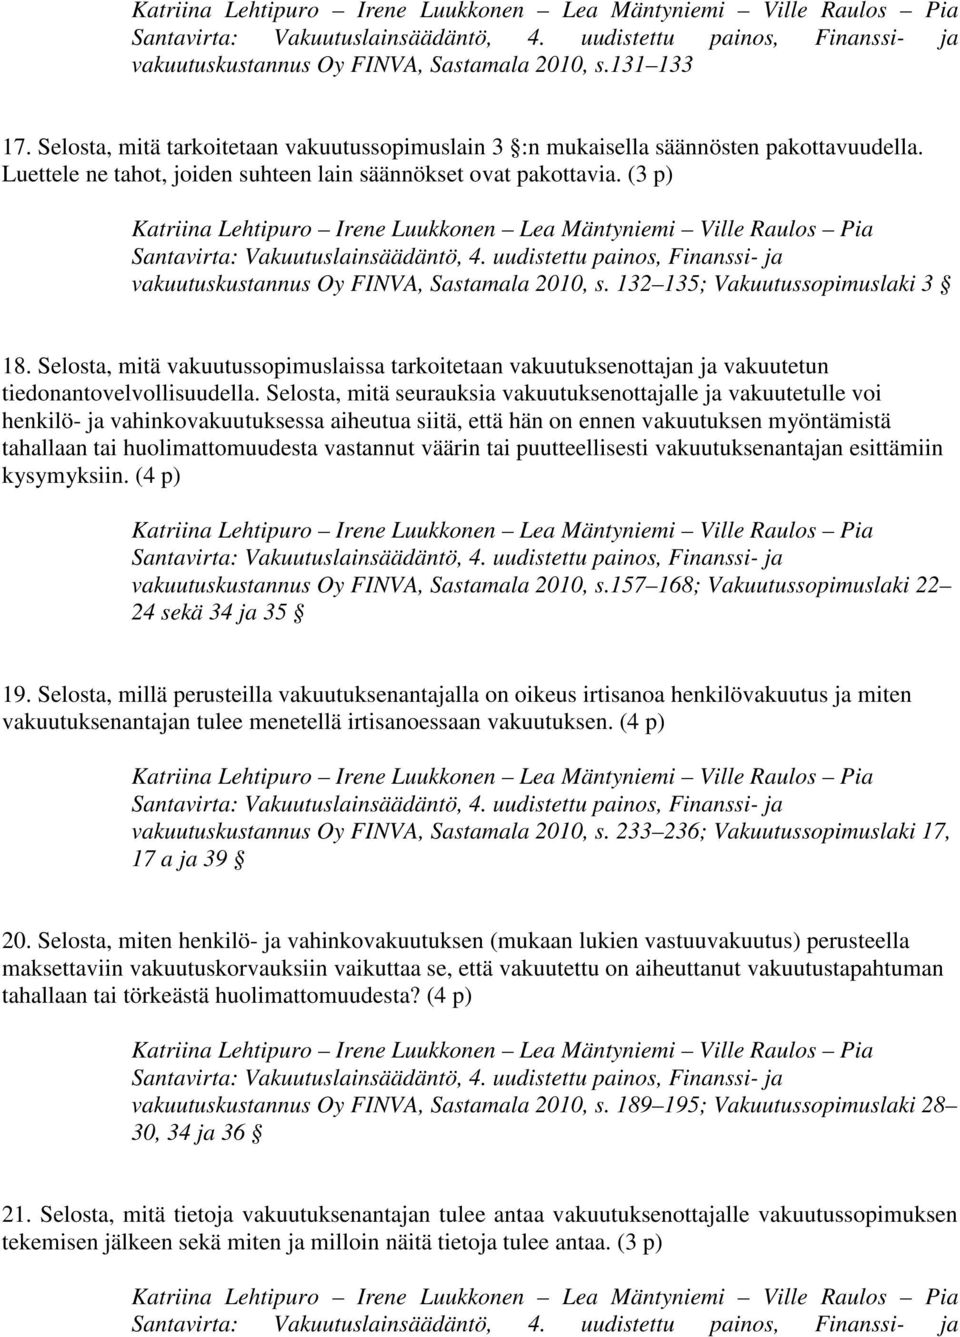 (3 p) Katriina Lehtipuro Irene Luukkonen Lea Mäntyniemi Ville Raulos Pia vakuutuskustannus Oy FINVA, Sastamala 2010, s. 132 135; Vakuutussopimuslaki 3 18.